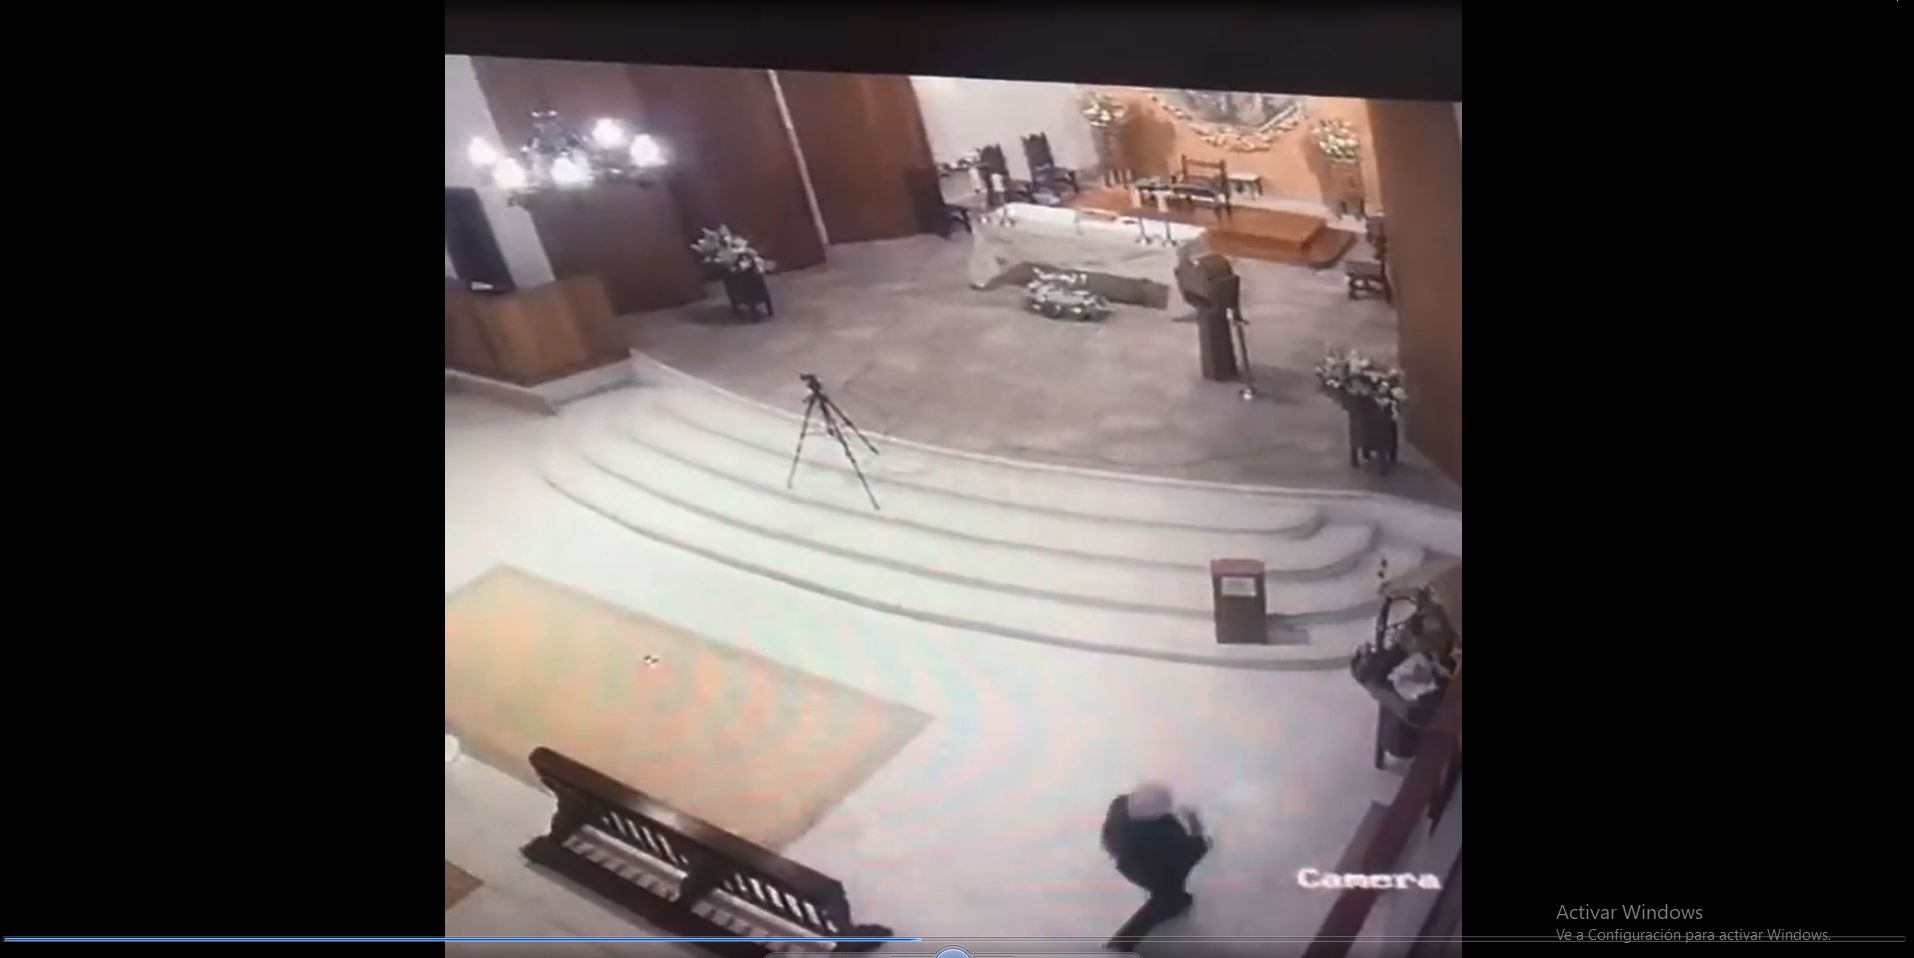 Las cámaras de videovigilancias de la Parroquia Santo Tomás de Aquino captaron el momento en que una mujer roba la imagen del Niño Dios. (Foto Prensa Libre: Captura de video)
